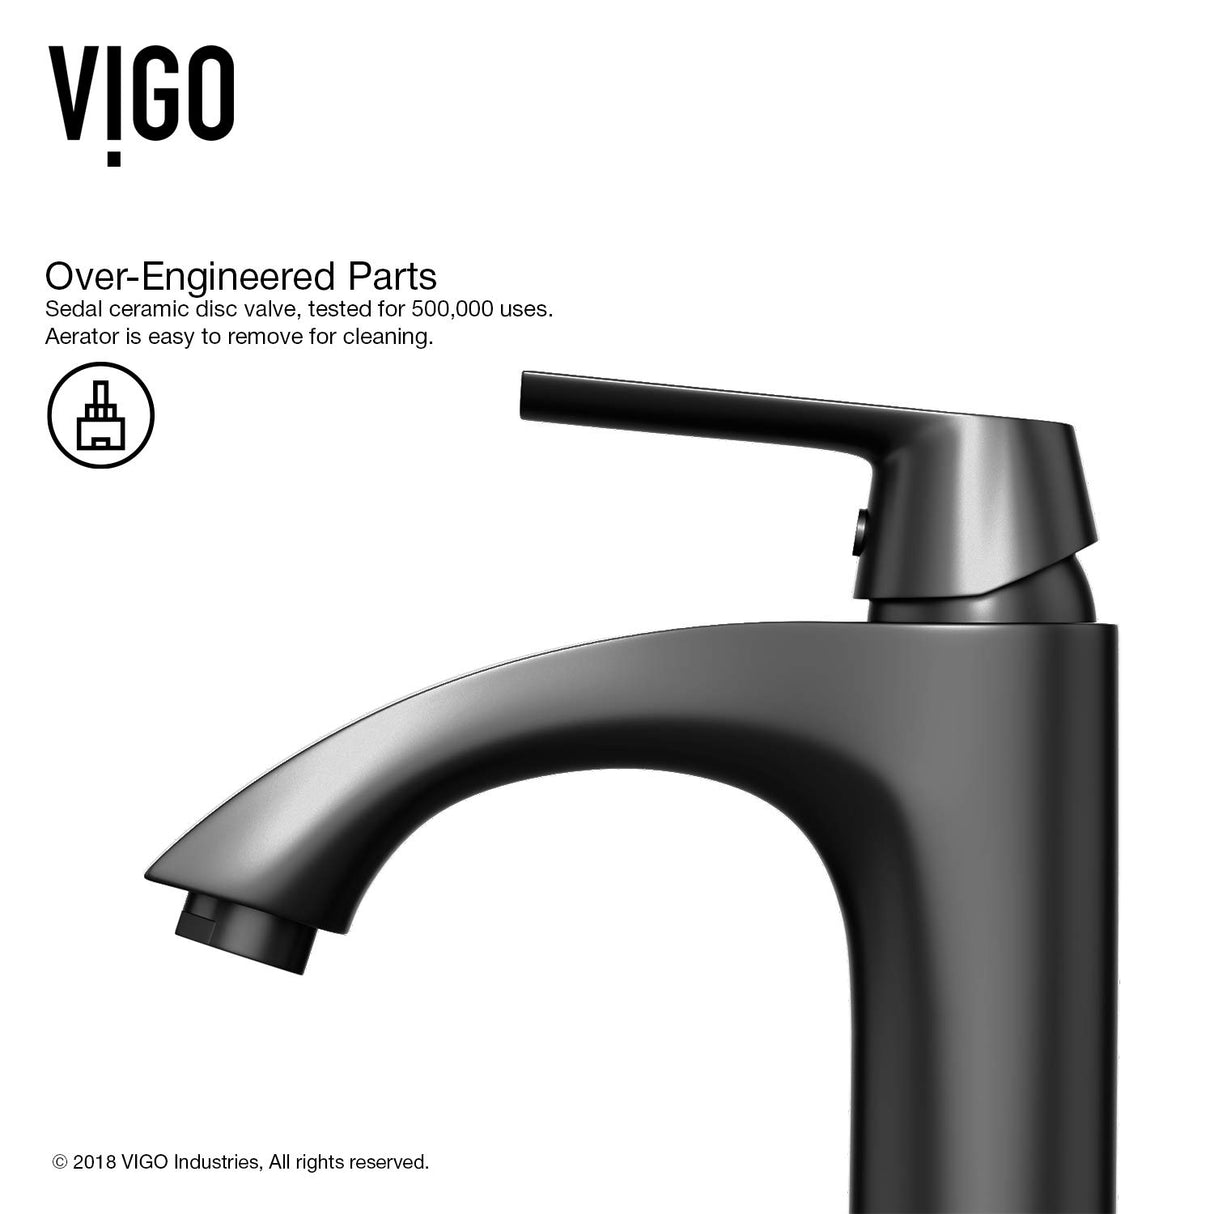 VIGO Penela 7.5 inch H Single Hole Single Handle Single Hole Bathroom Faucet in Matte Black - Bathroom Sink Faucet VG01028MB